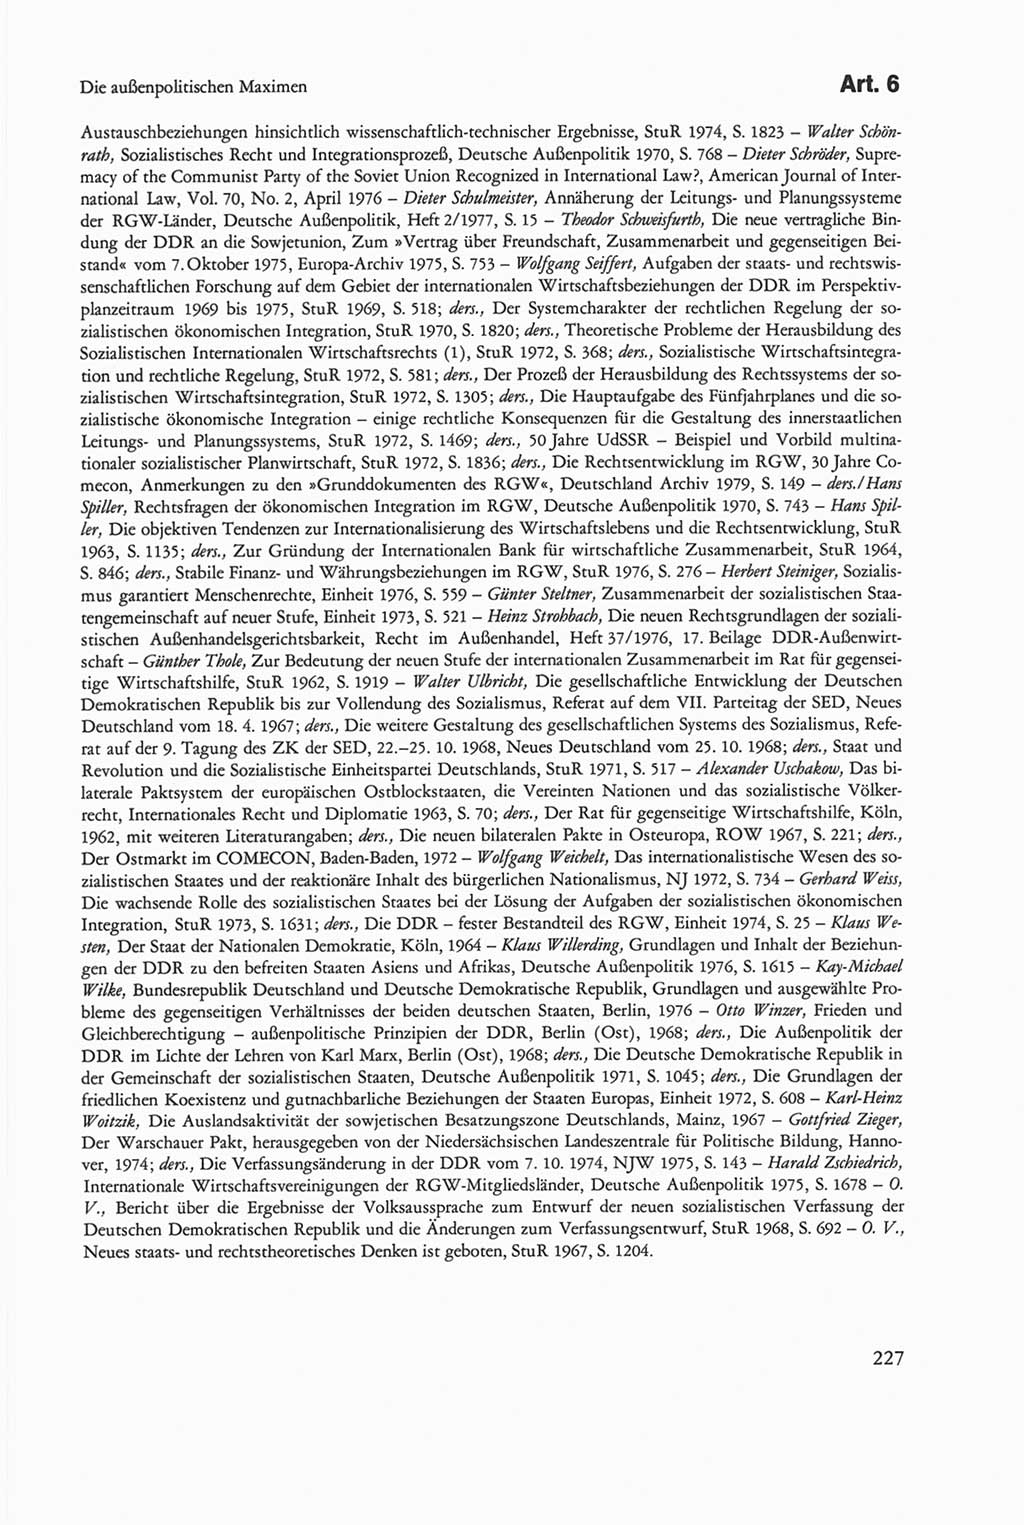 Die sozialistische Verfassung der Deutschen Demokratischen Republik (DDR), Kommentar mit einem Nachtrag 1997, Seite 227 (Soz. Verf. DDR Komm. Nachtr. 1997, S. 227)